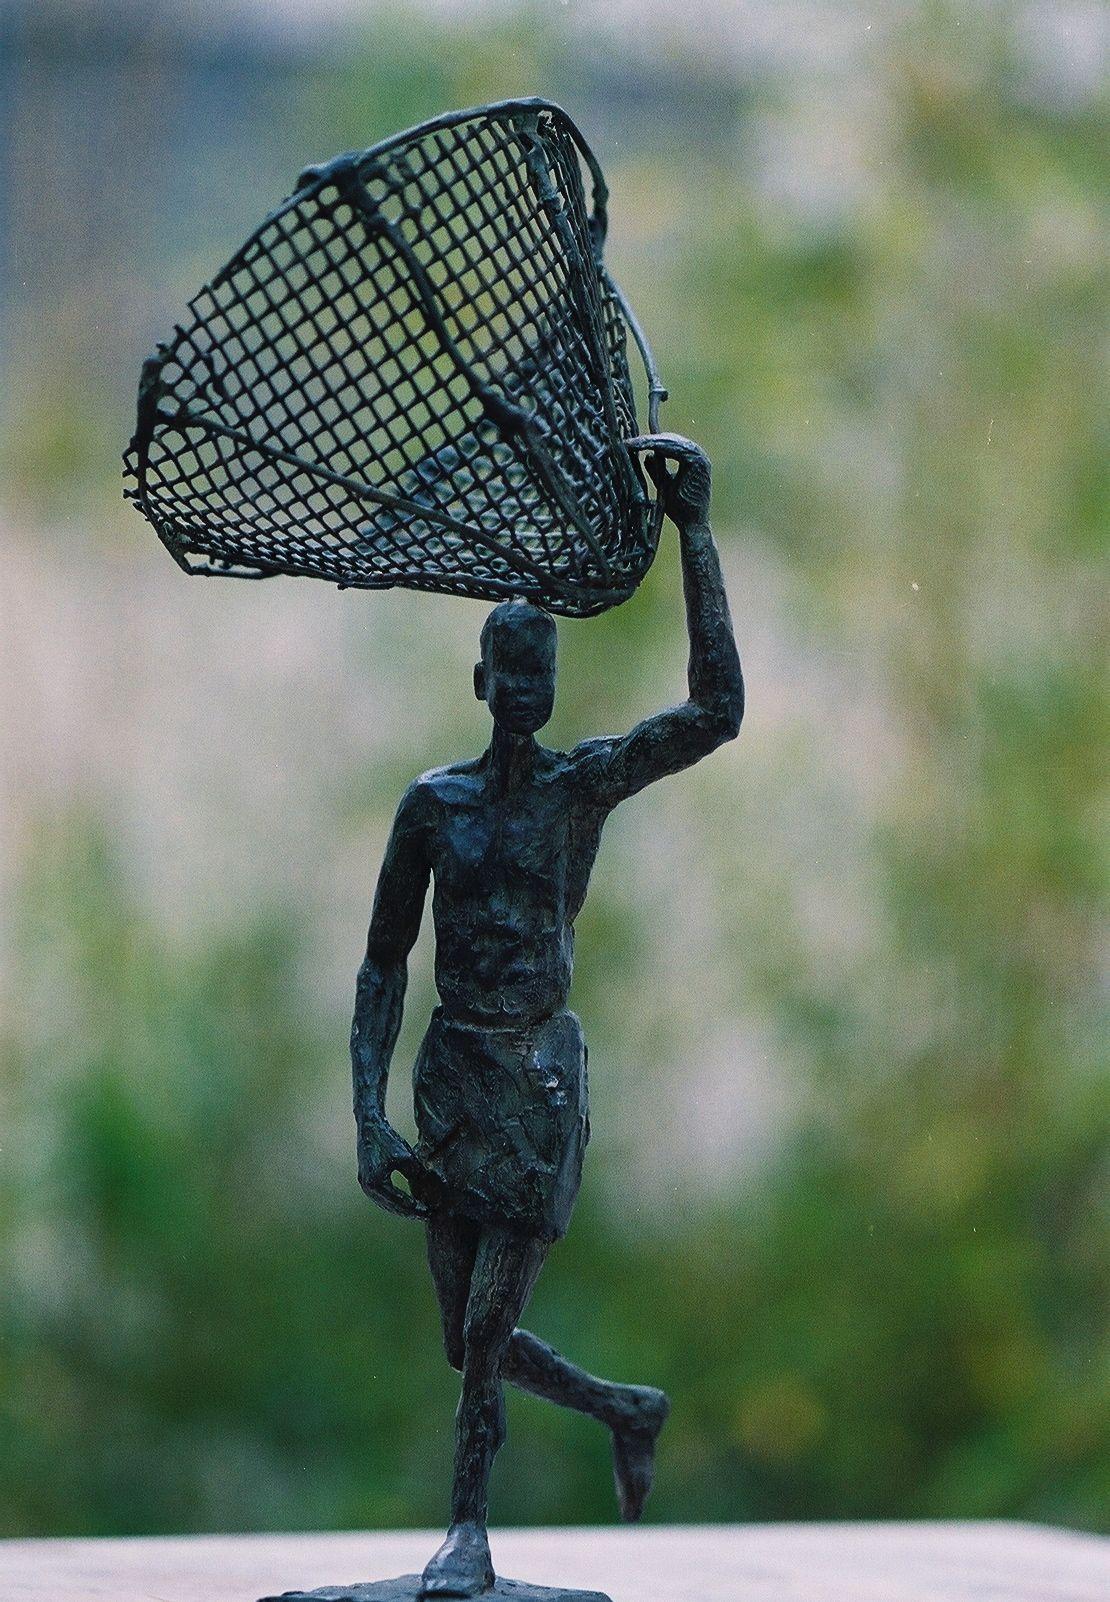 Départ pour la pêche est une sculpture en bronze de l'artiste contemporaine française Marine de Soos, dont les dimensions sont de 31 × 11 × 10 cm (12,2 × 4,3 × 3,9 in). 
La sculpture est signée et numérotée, elle fait partie d'une édition limitée à